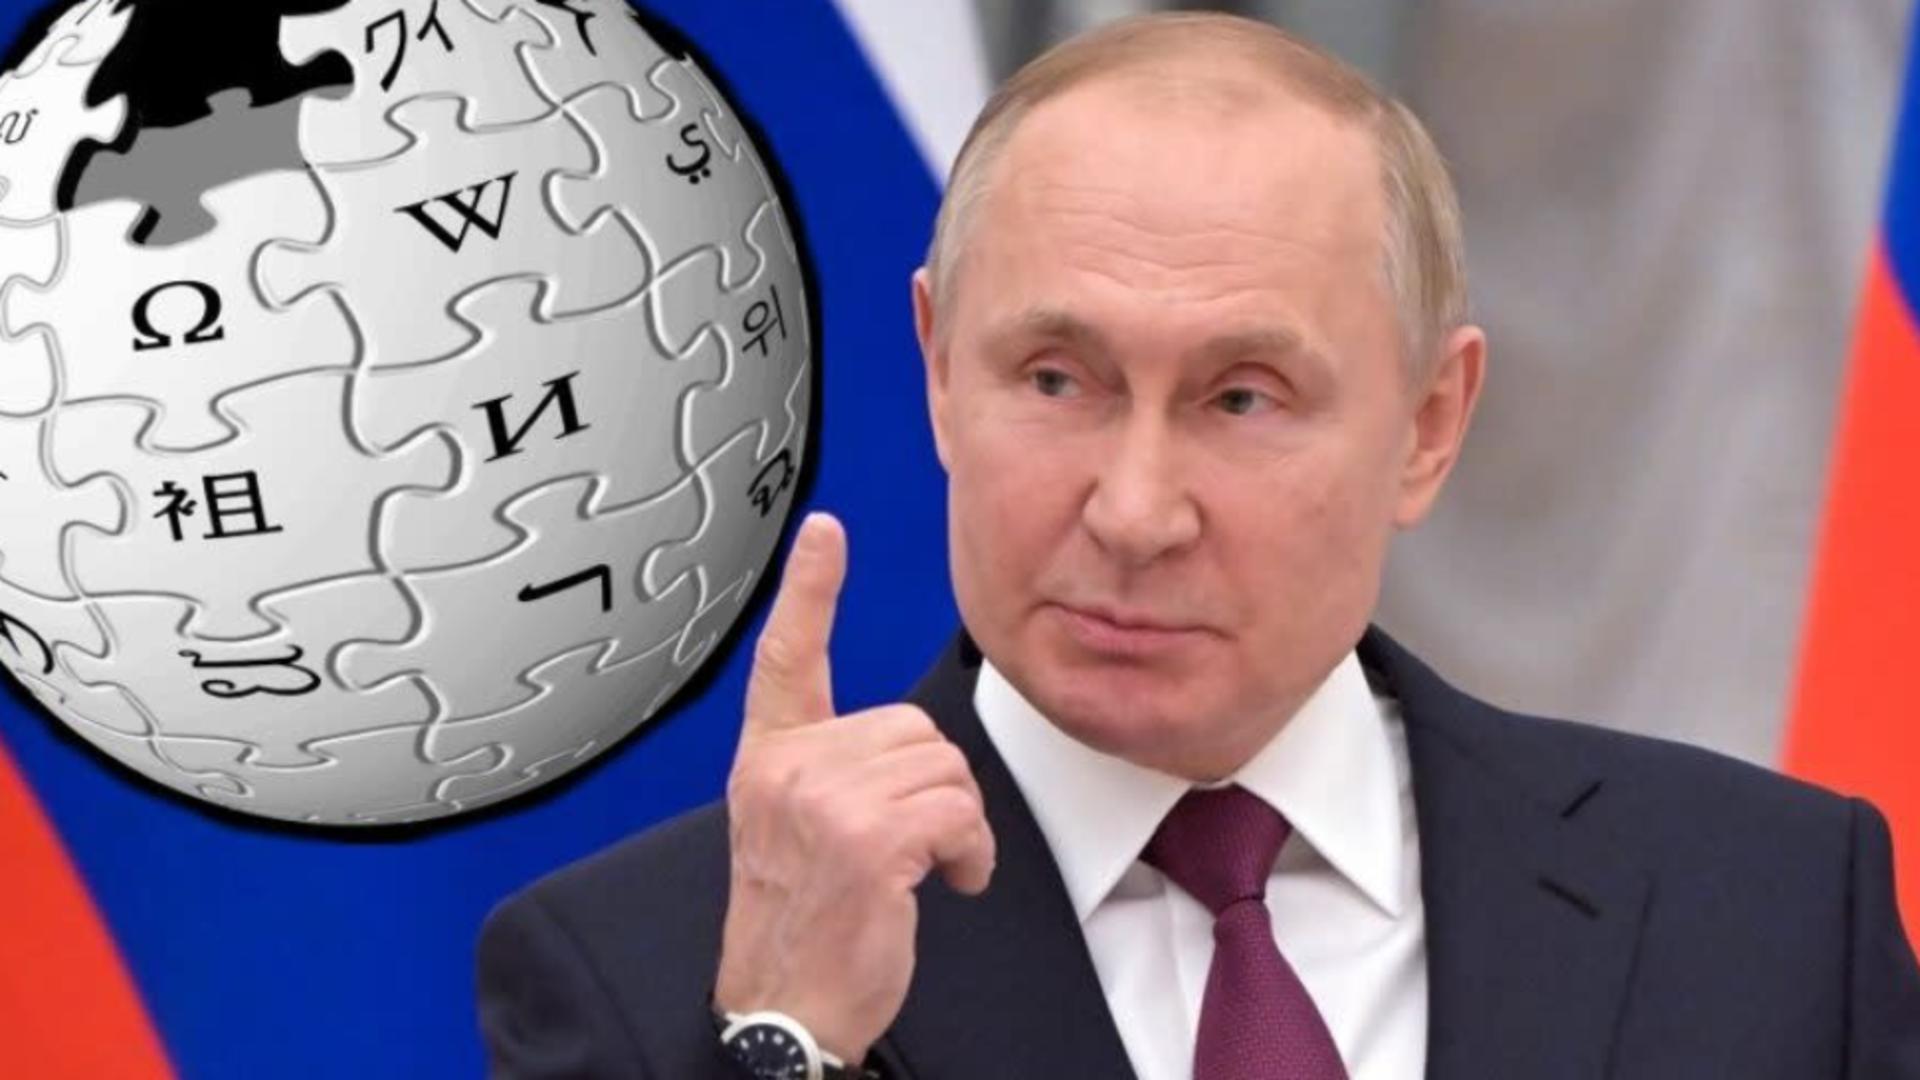 Putin izolează și mai mult Rusia: anunță varianta rusească a Wikipedia